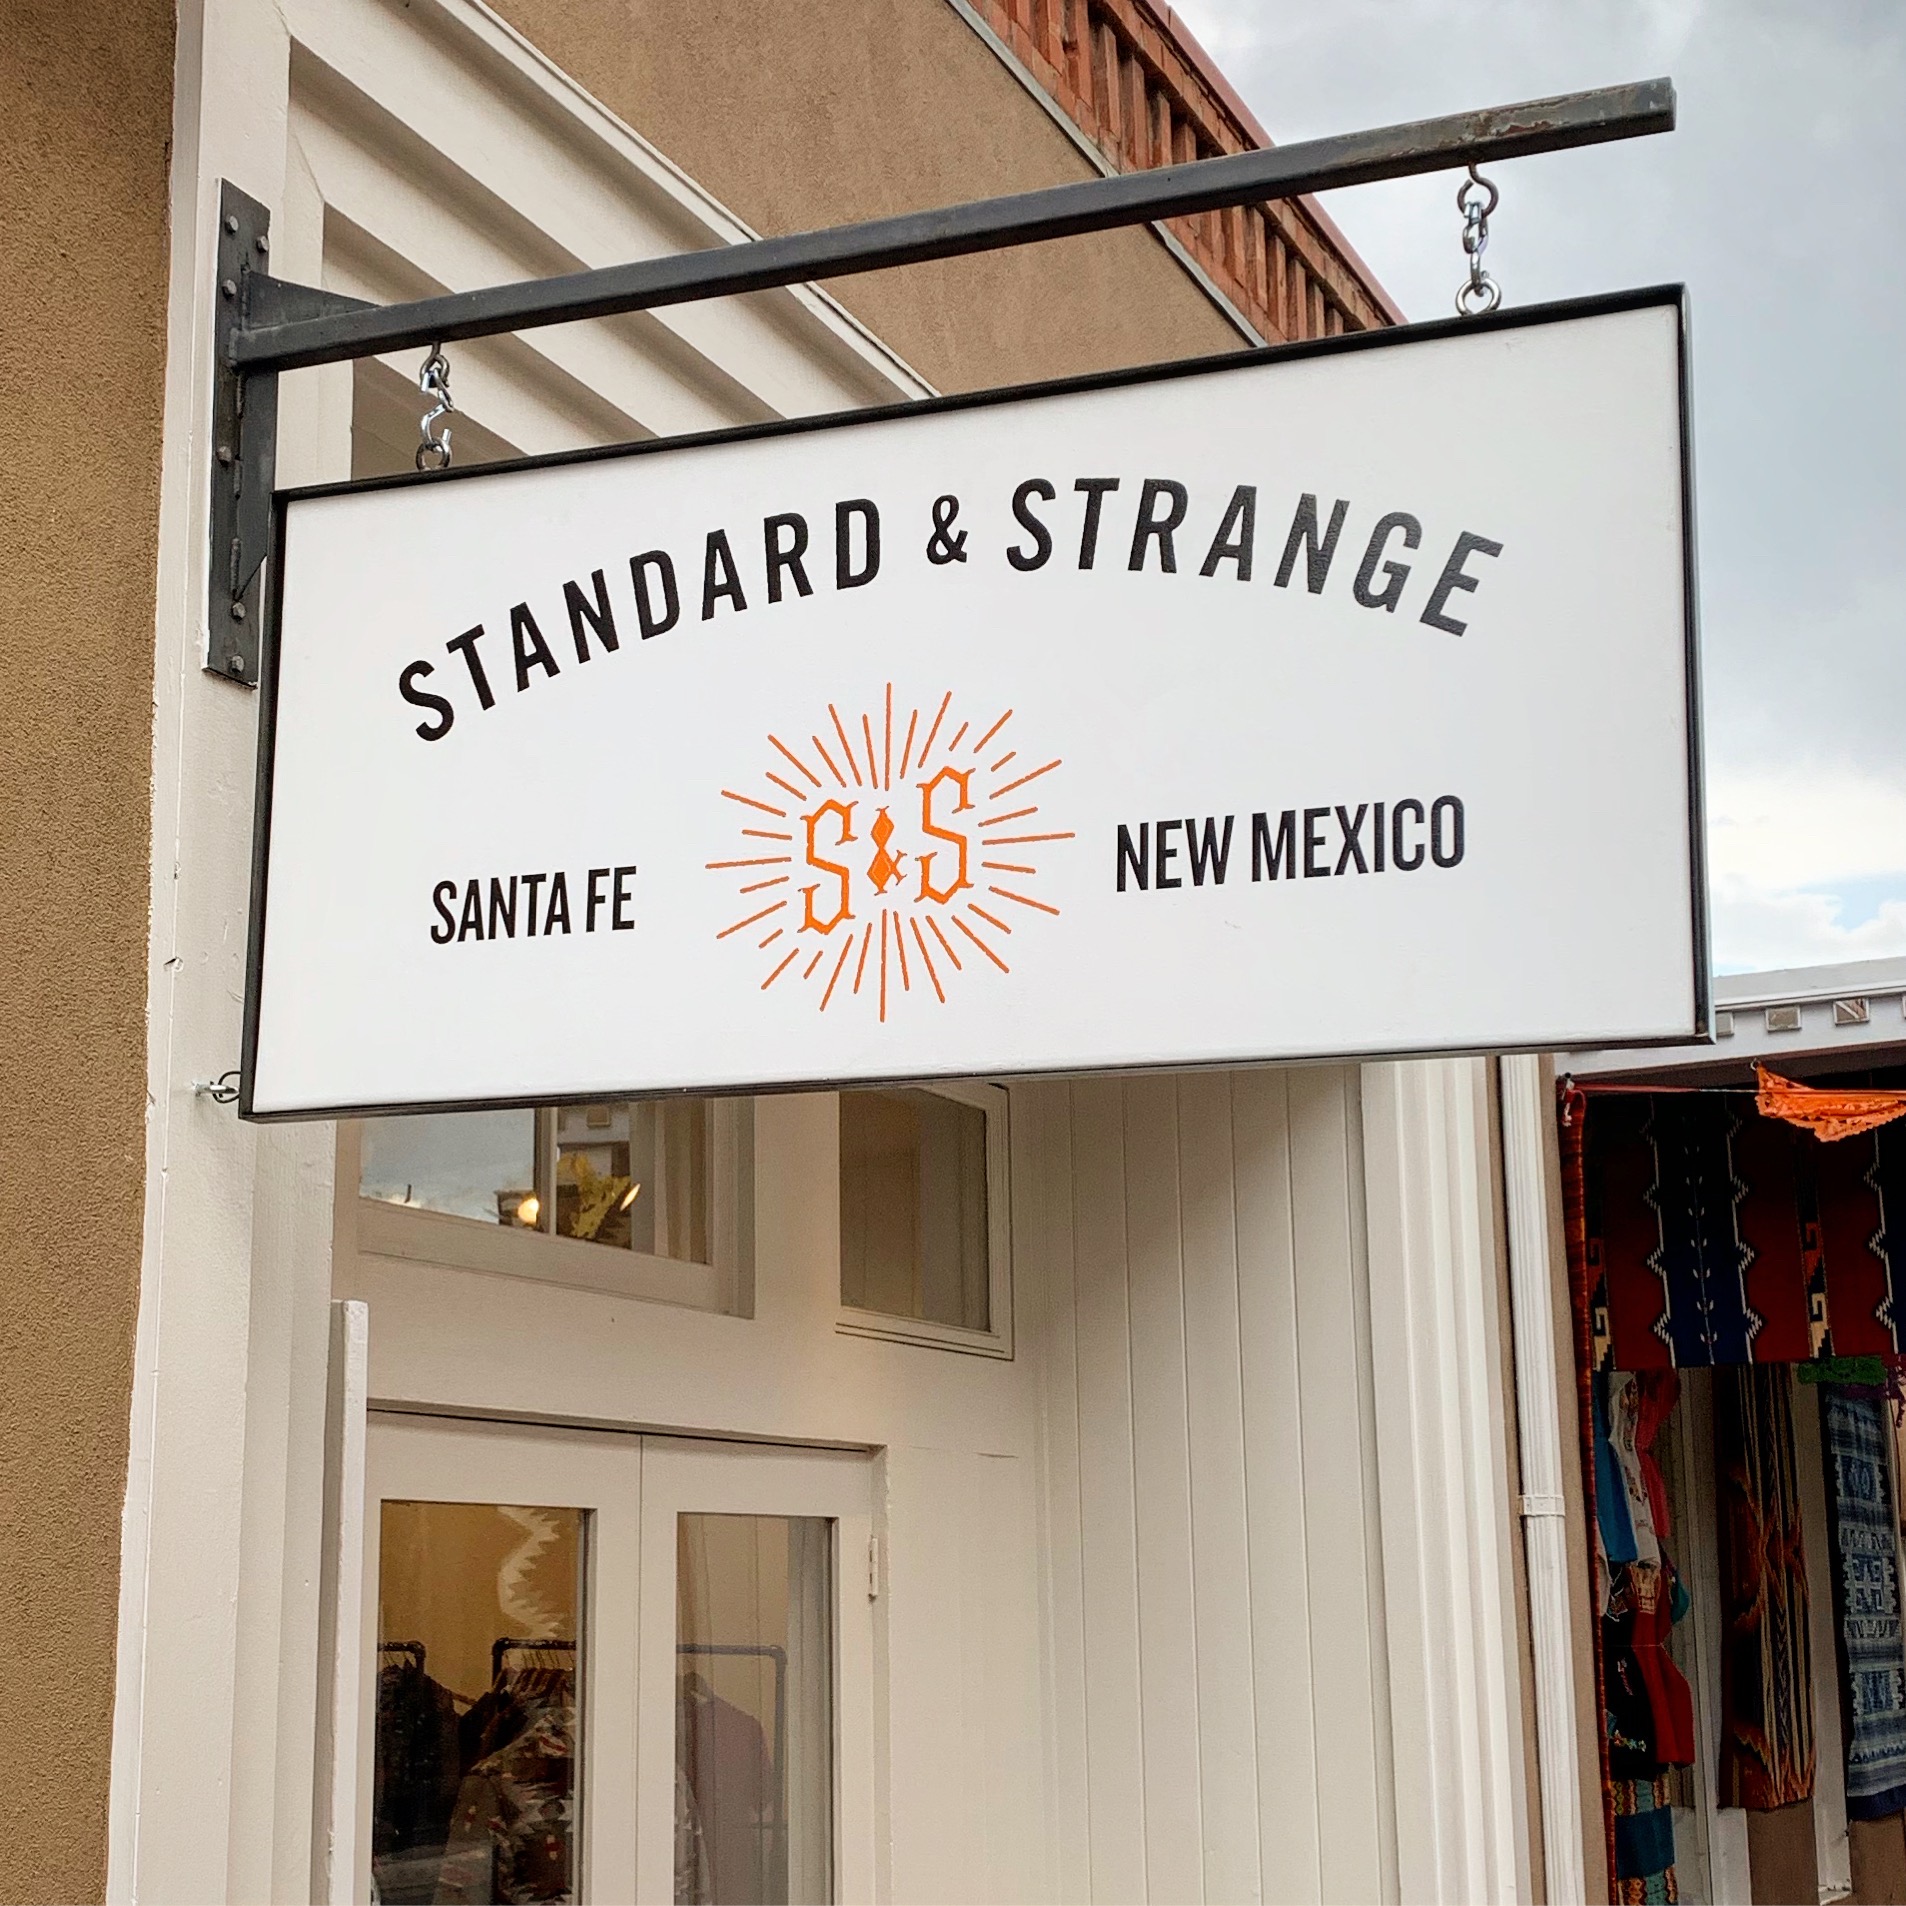 Standard & Strange Santa Fe